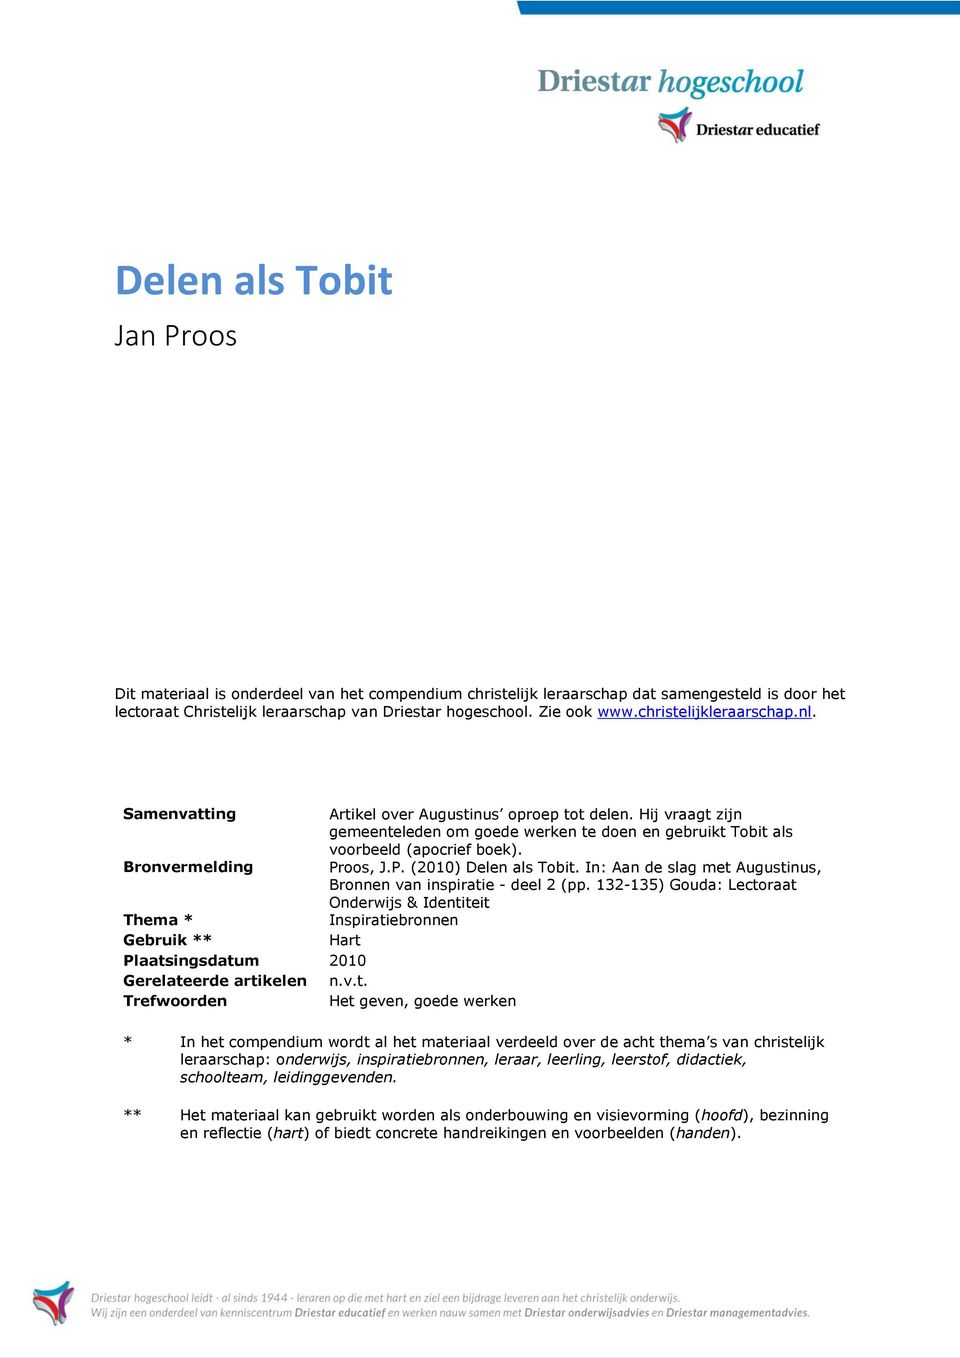 Bronvermelding Proos, J.P. (2010) Delen als Tobit. In: Aan de slag met Augustinus, Bronnen van inspiratie - deel 2 (pp.